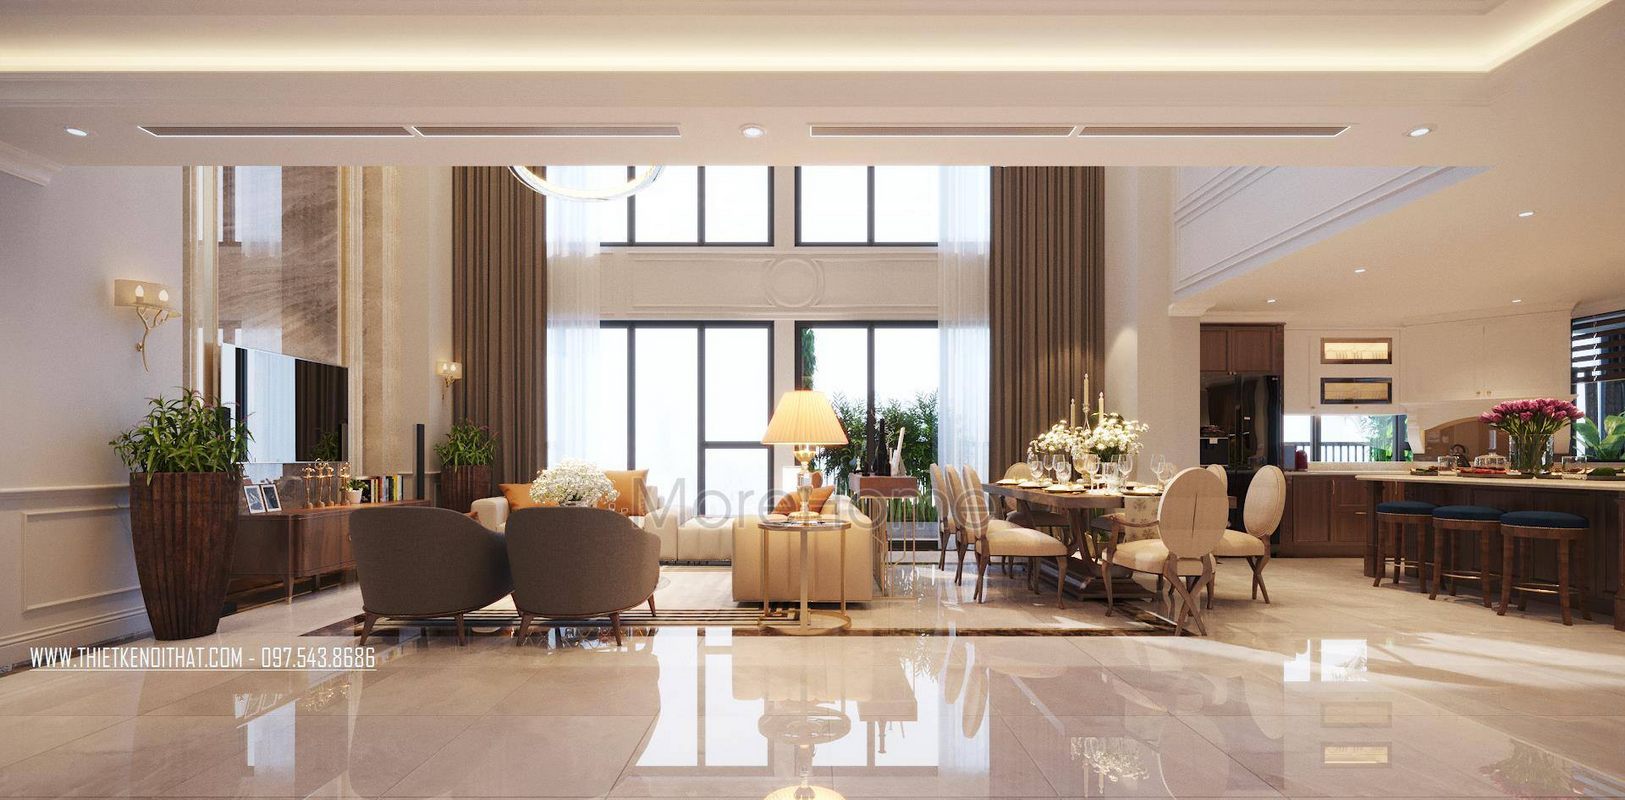 Thiết kế nội thất căn hộ Duplex hiện đại, đẹp, cao cấp tại Thanh Xuân Complex